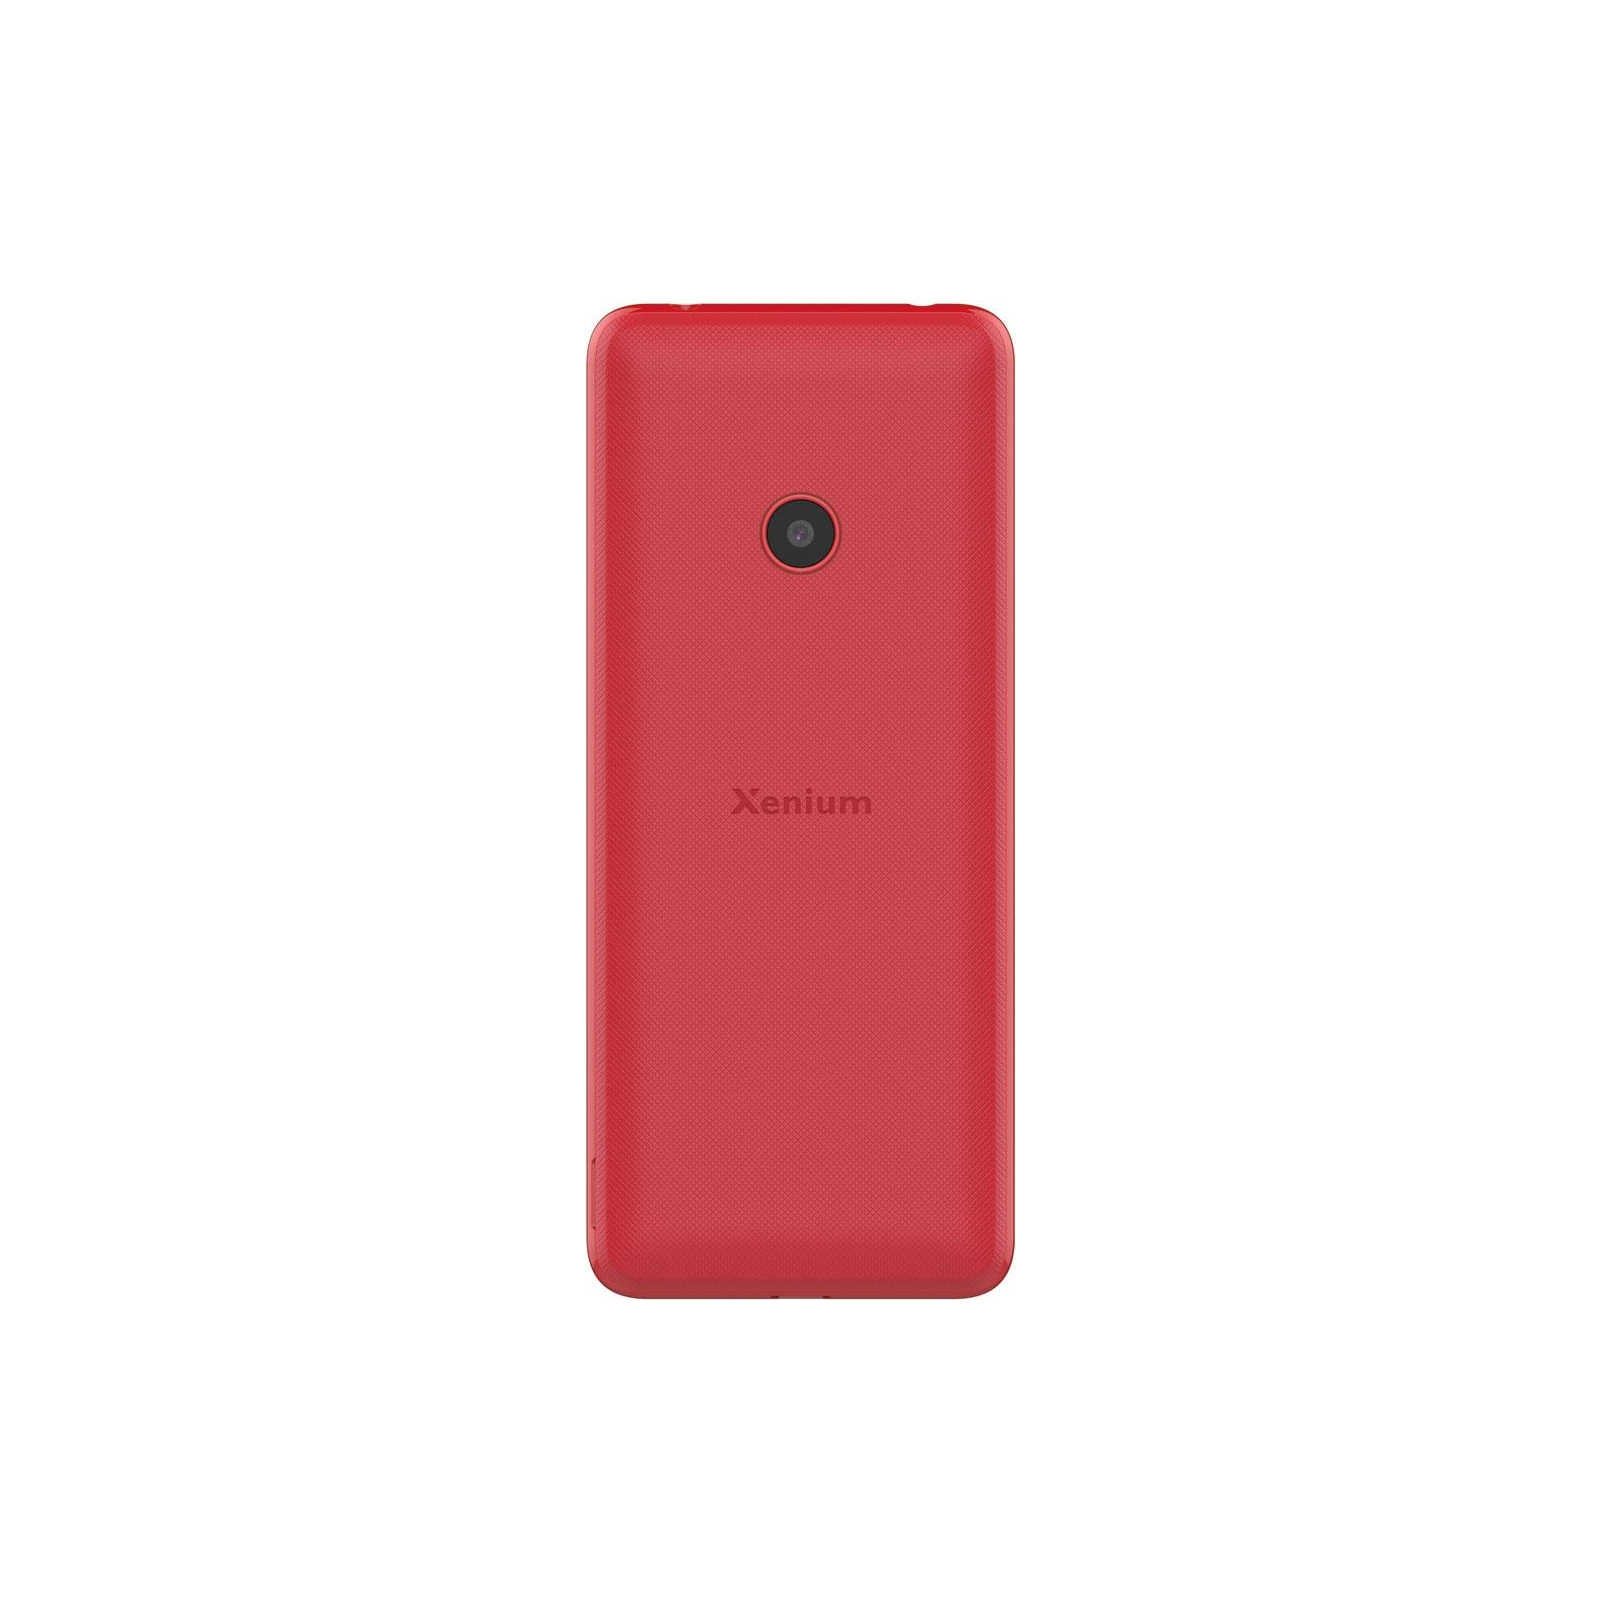 Мобильный телефон Philips Xenium E169 Red изображение 2